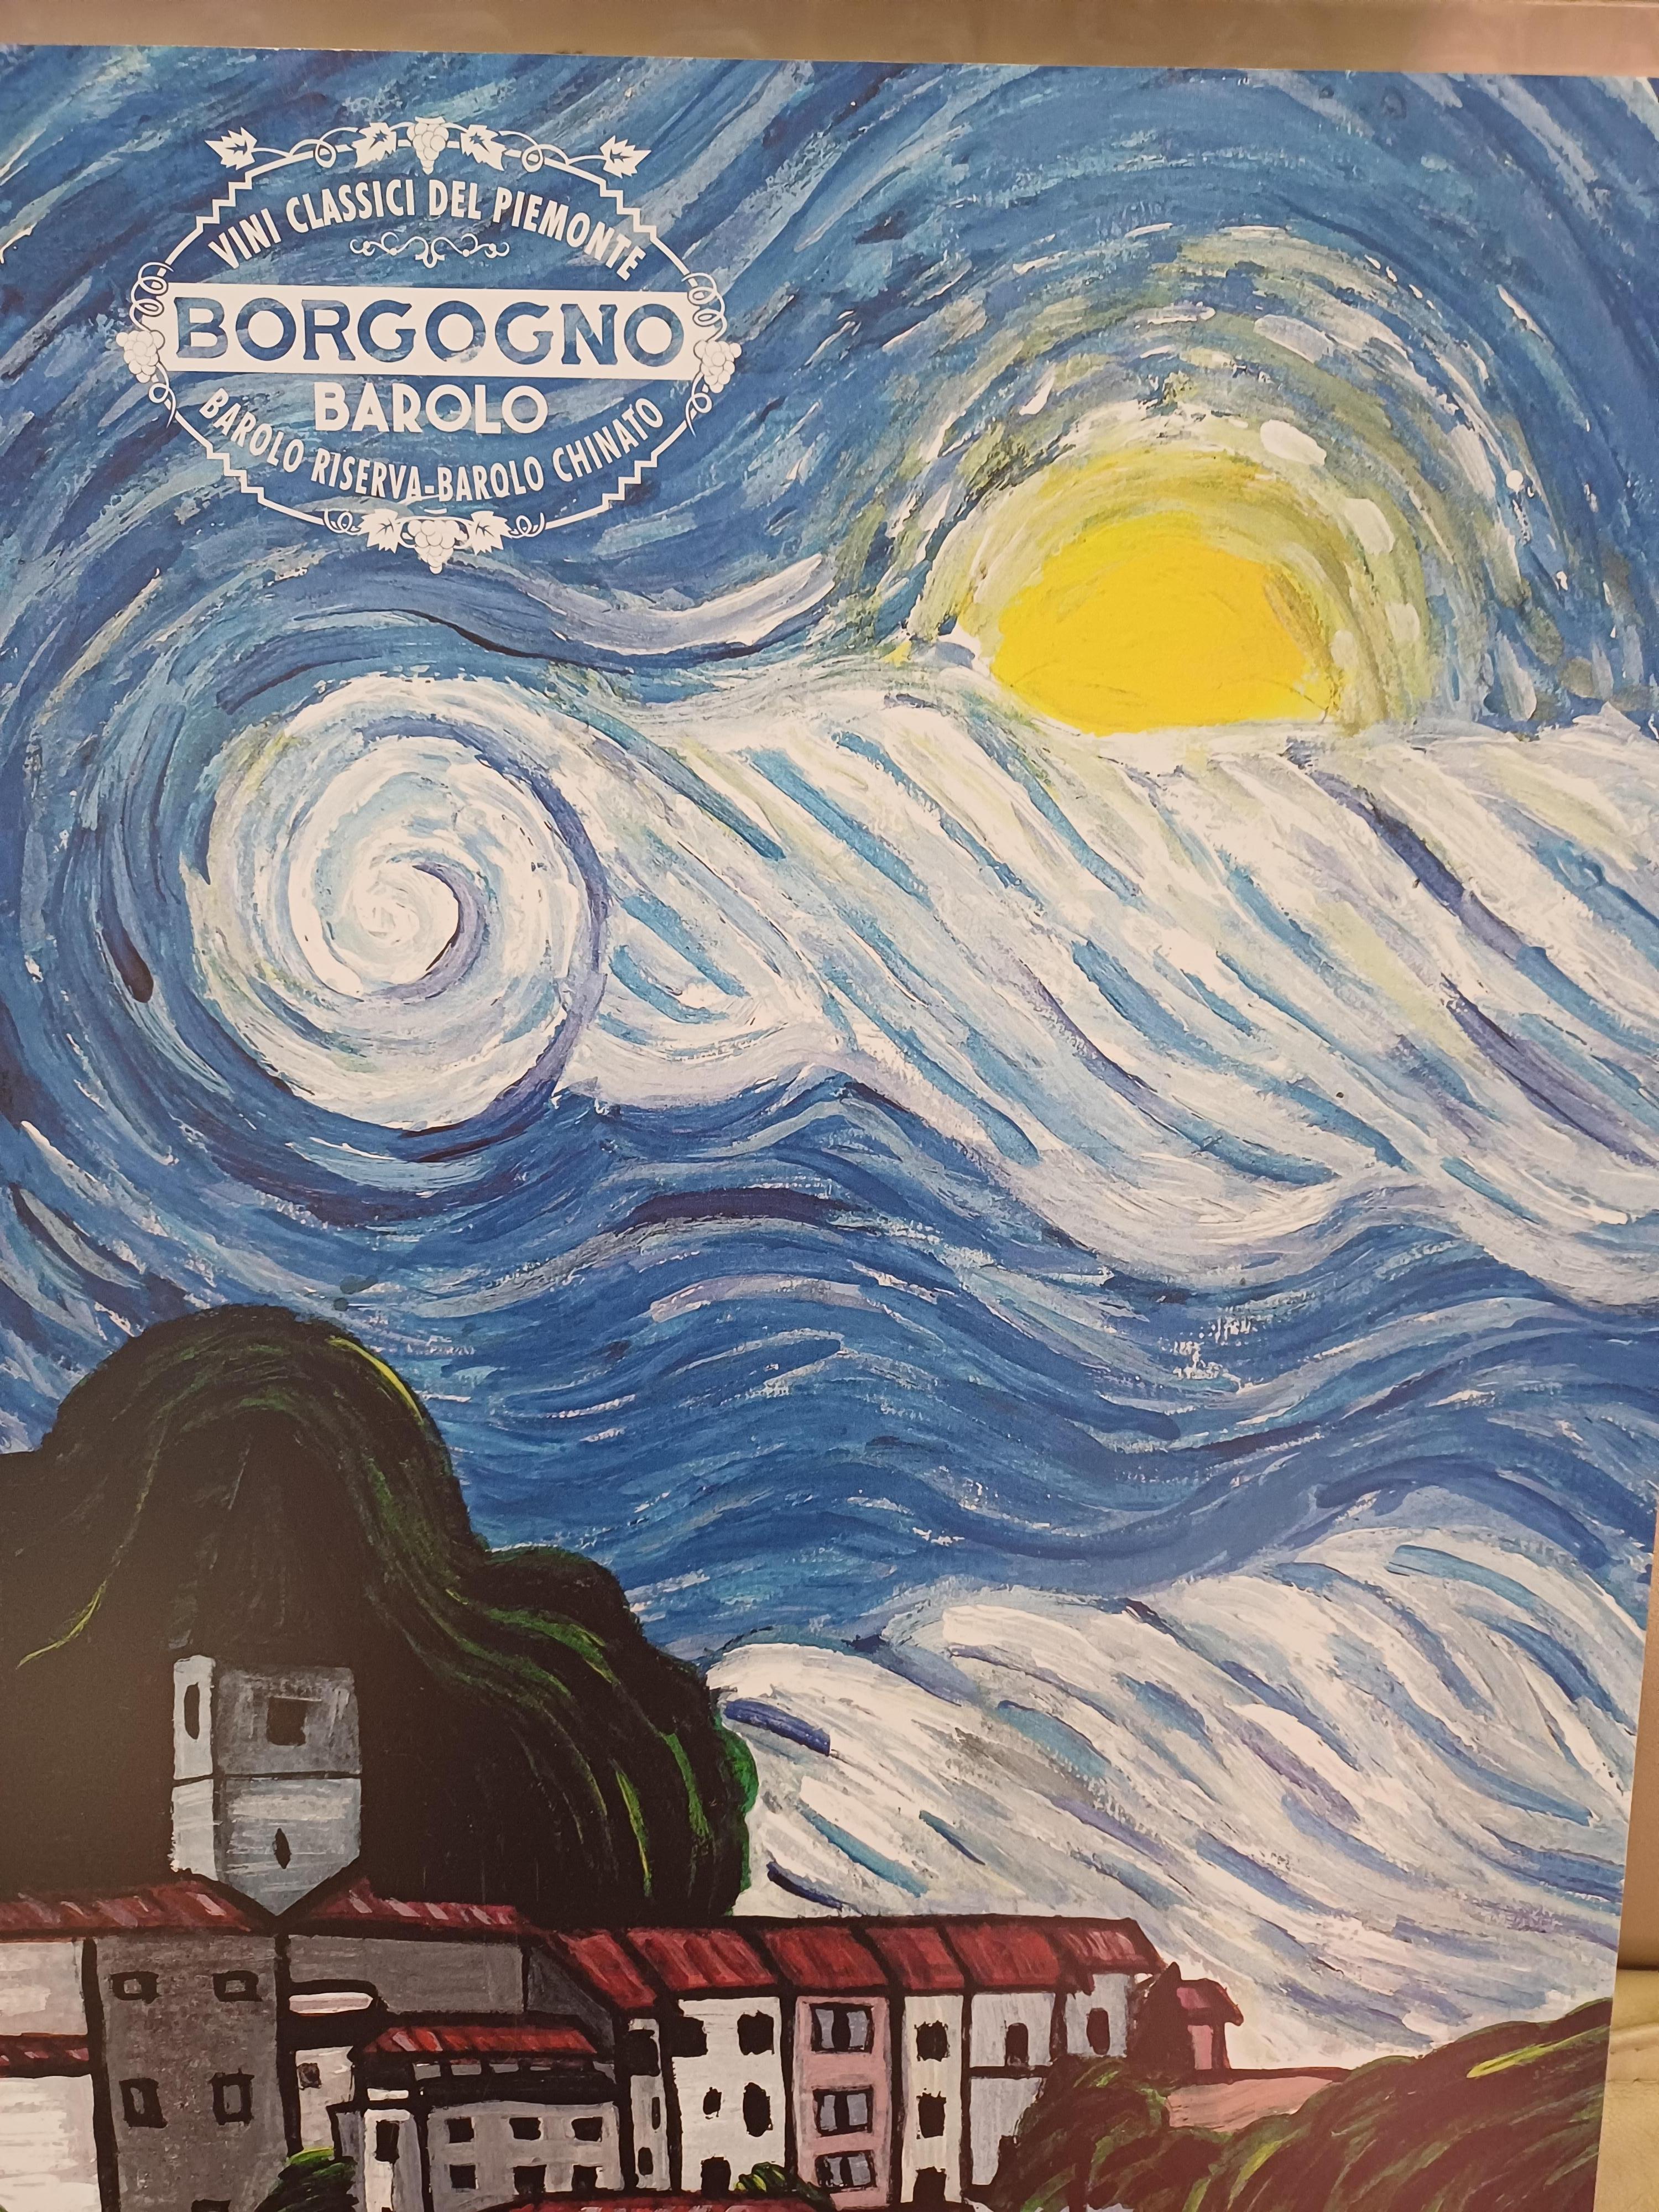 Borgogno Barolo Italiano poster.
Elegant Poster on laminate ready to hang on a wall.
